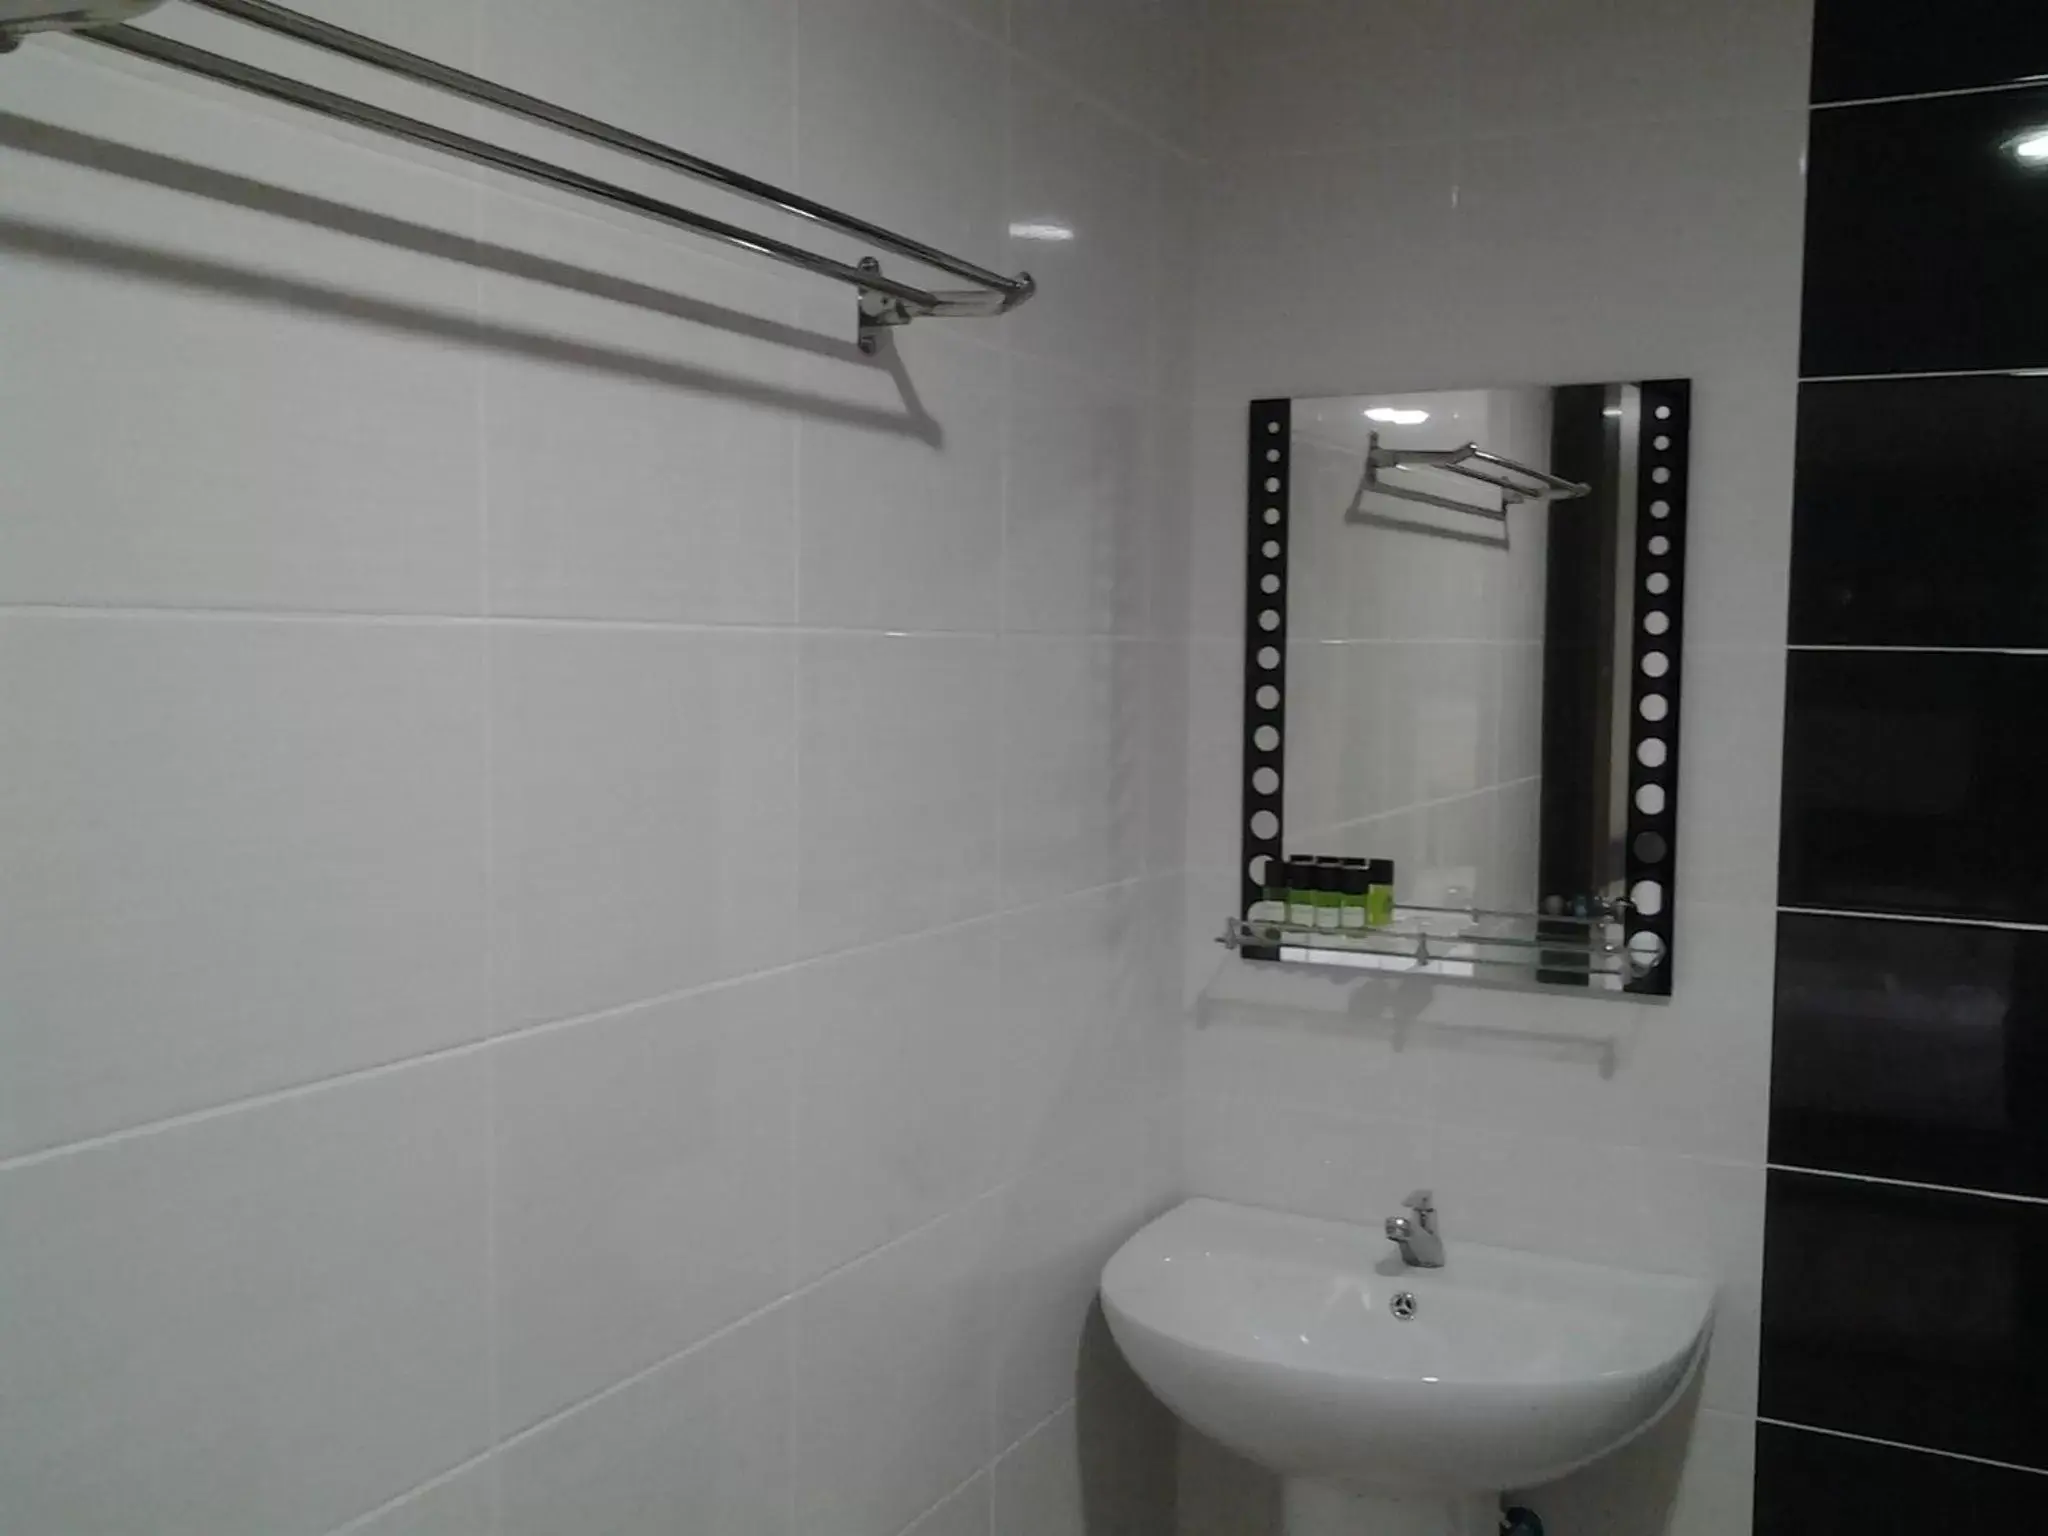 Toilet, Bathroom in Suria Seremban Hotel